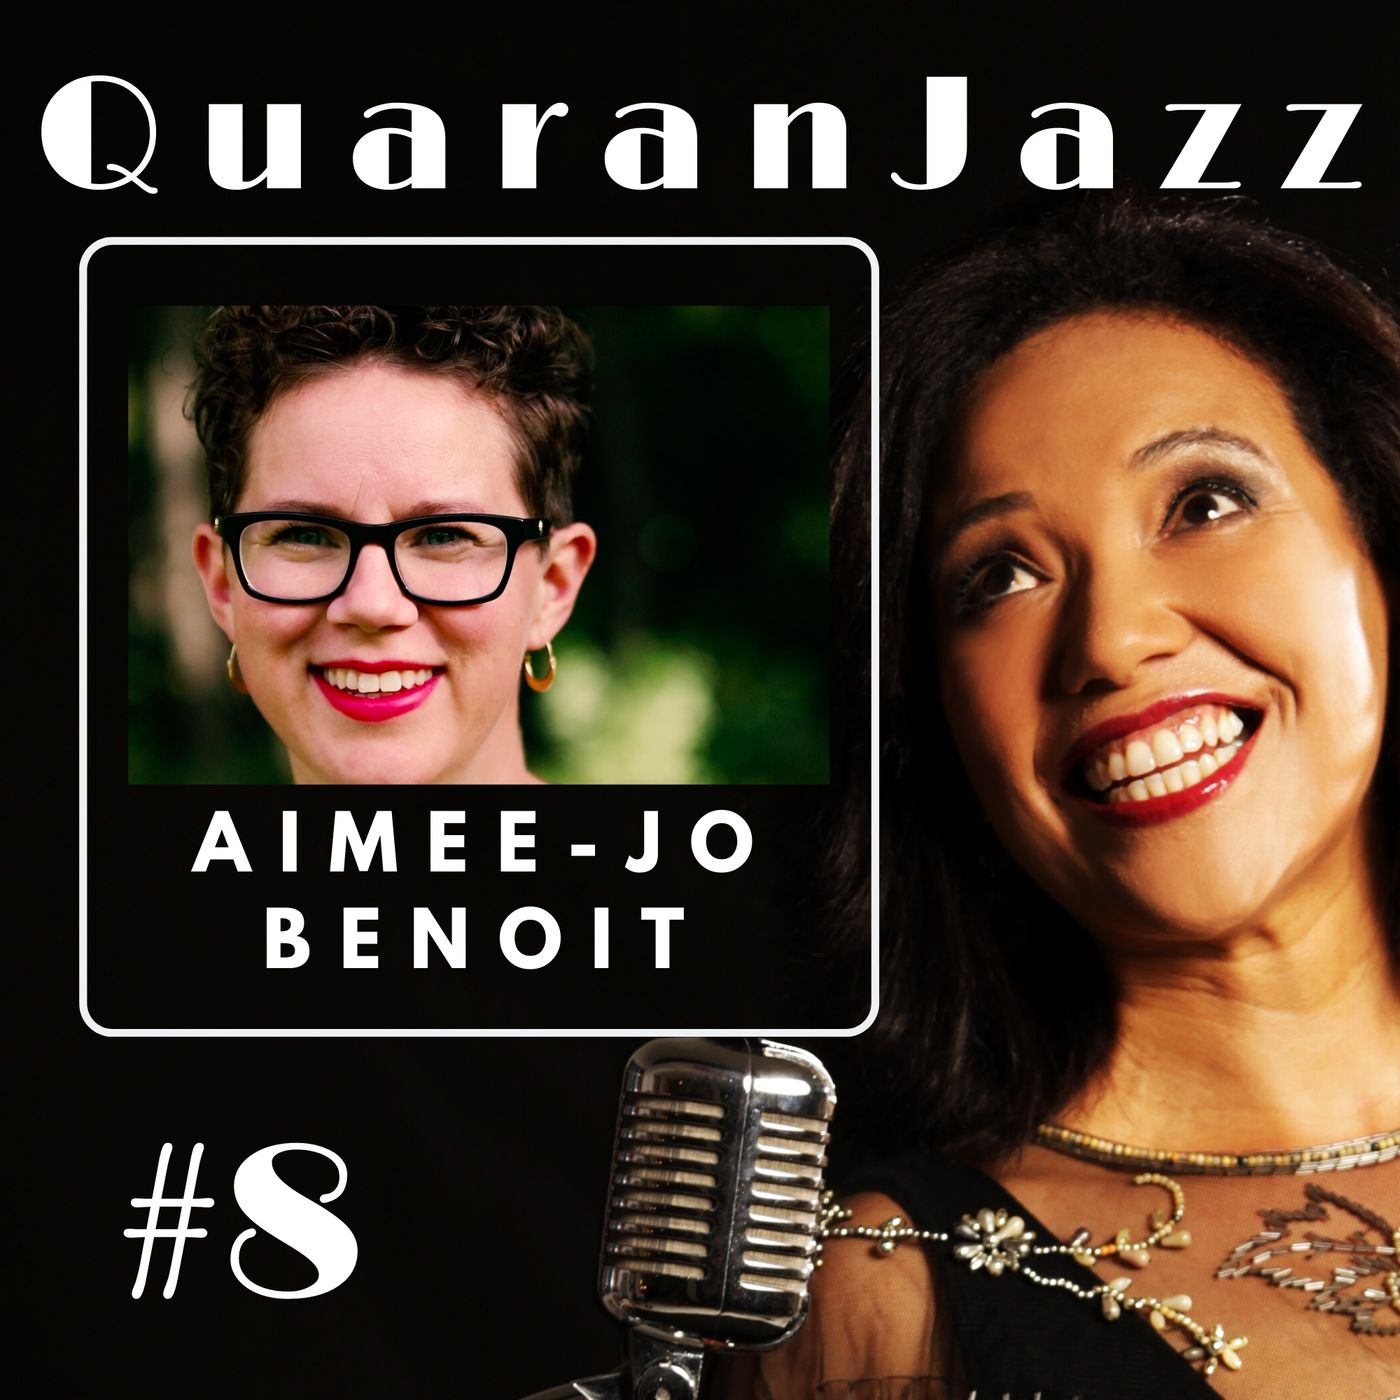 QuaranJazz episode #8 - Interview with Aimee-Jo Benoit